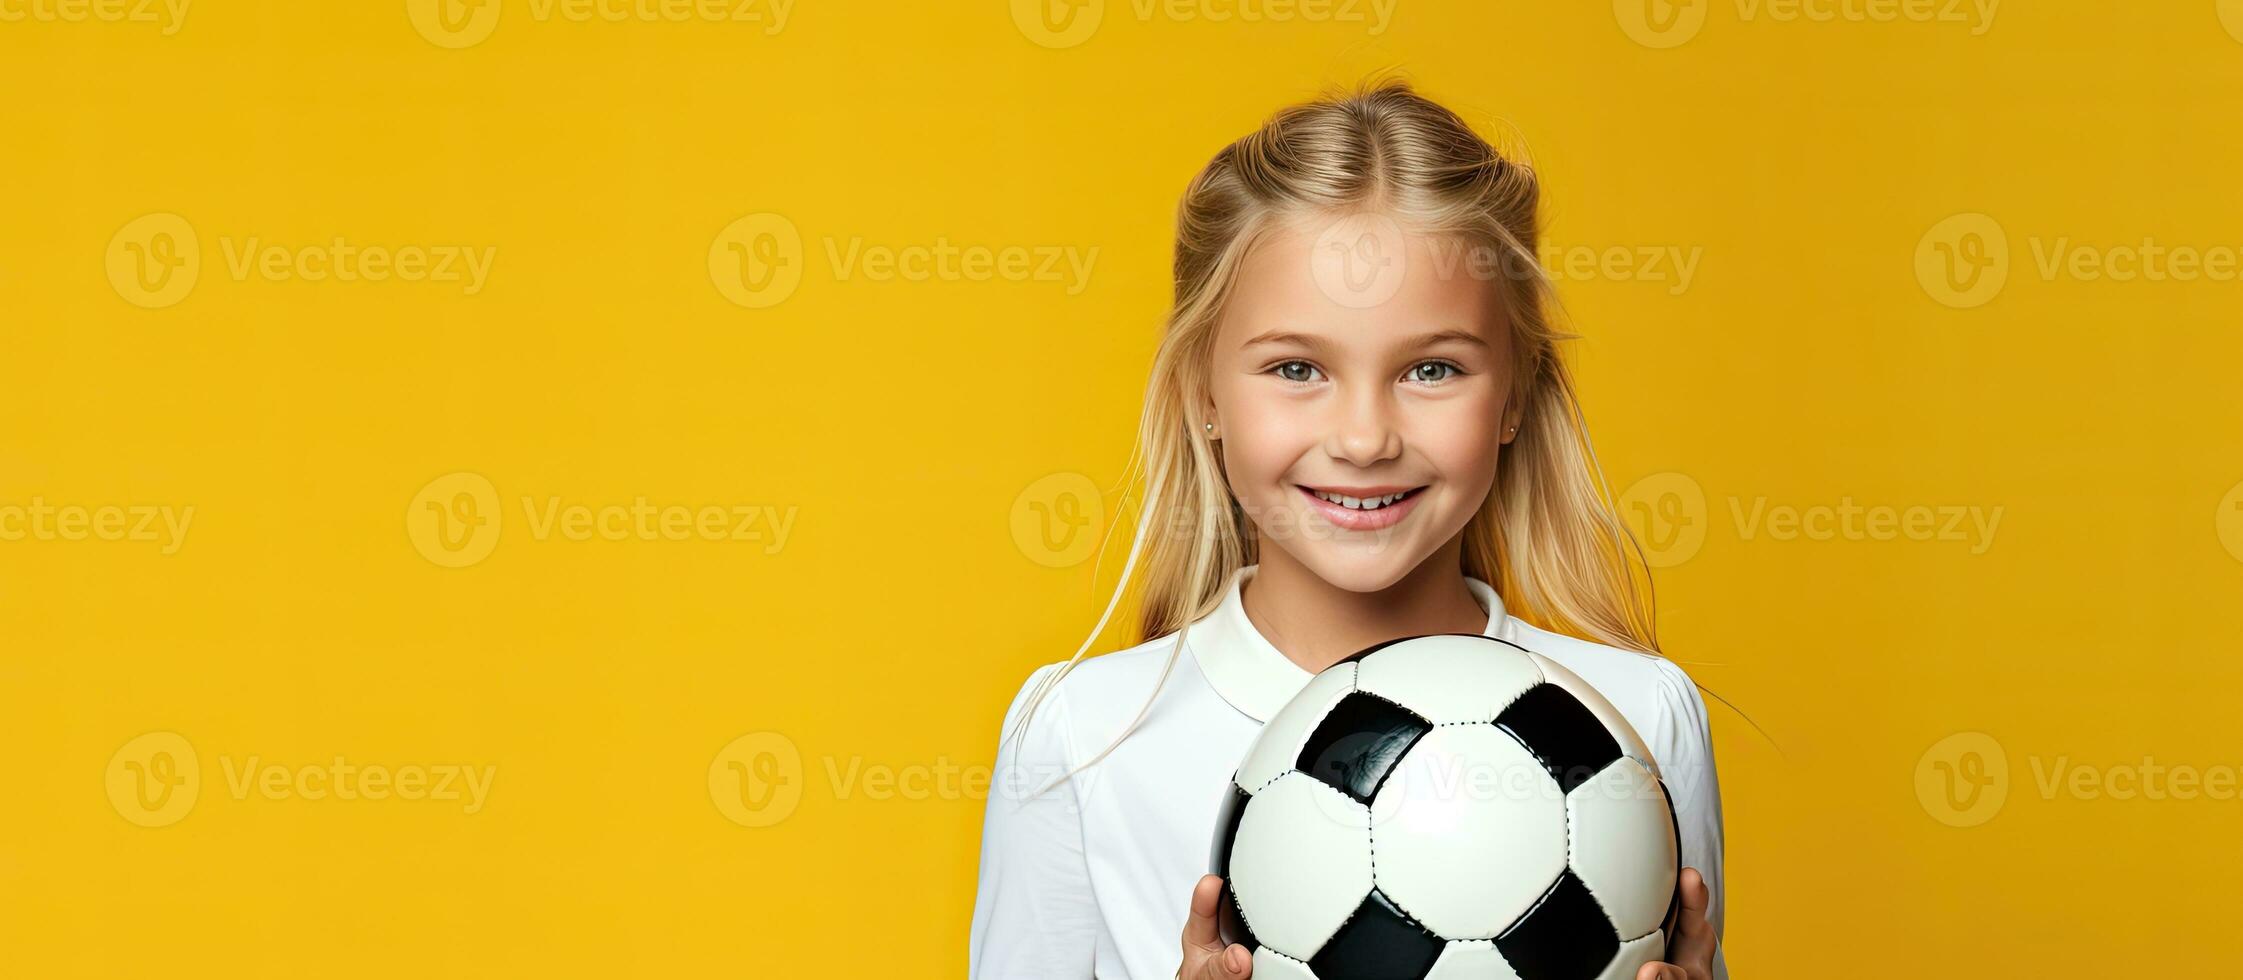 blond caucasian flicka innehav fotboll boll på gul bakgrund barn fotboll begrepp foto